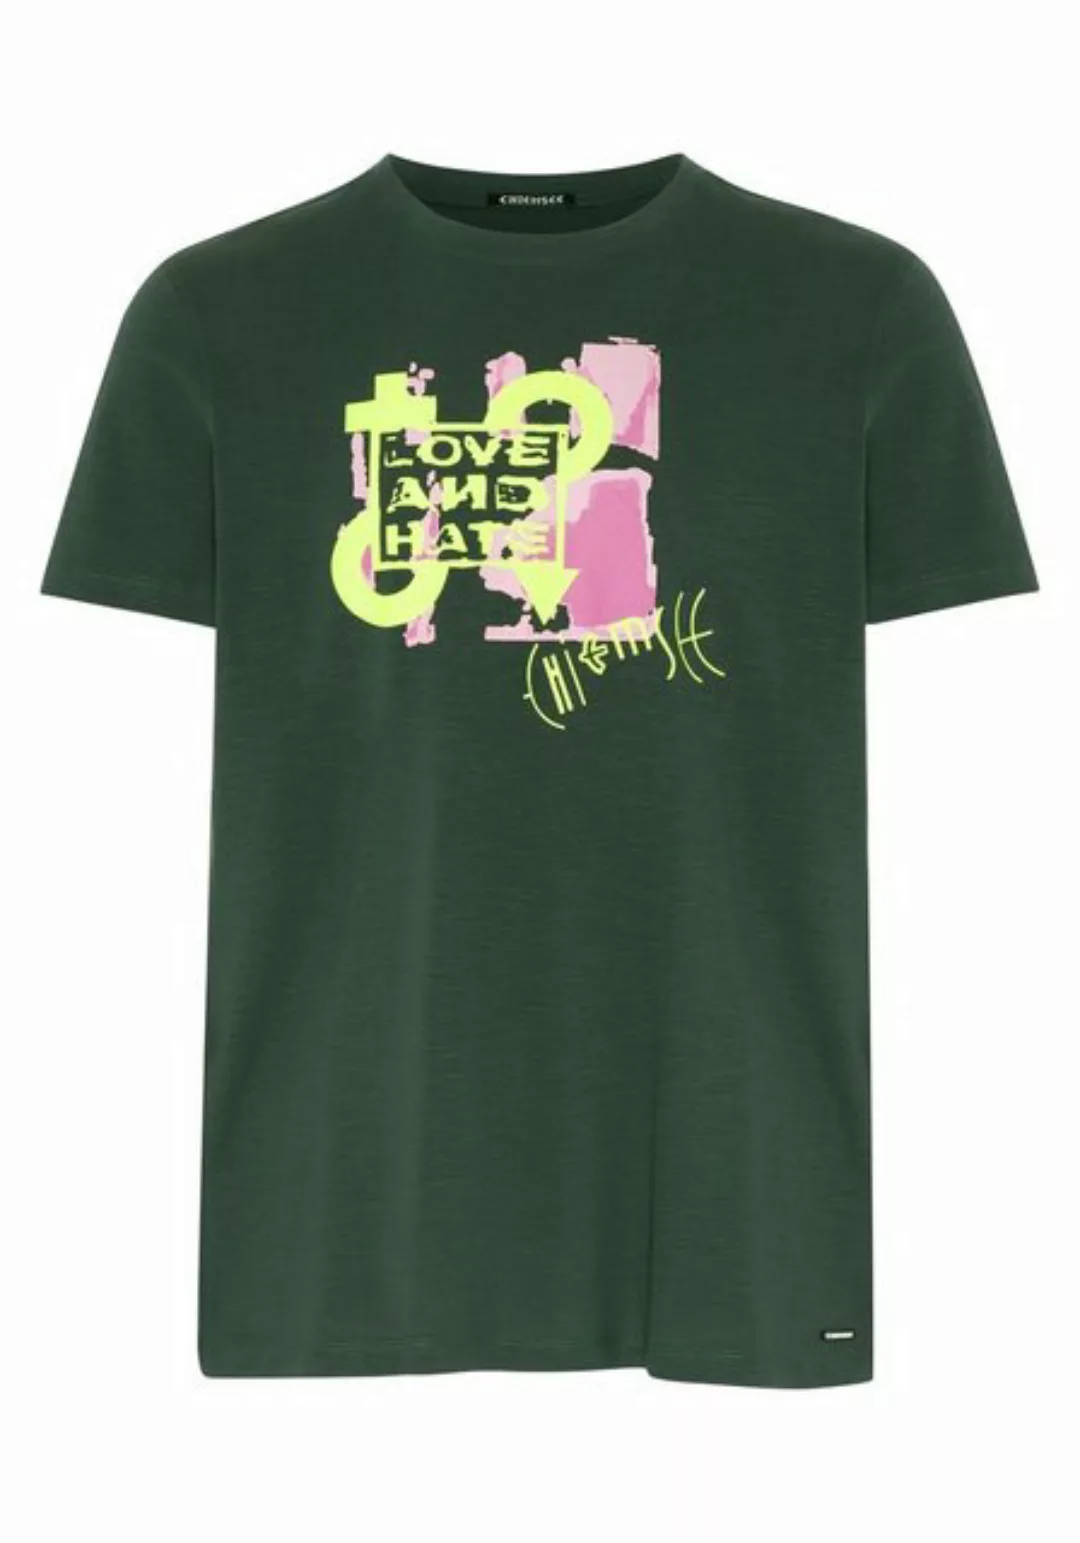 Chiemsee Print-Shirt T-Shirt im LOVE-AND-HATE Design 1 günstig online kaufen